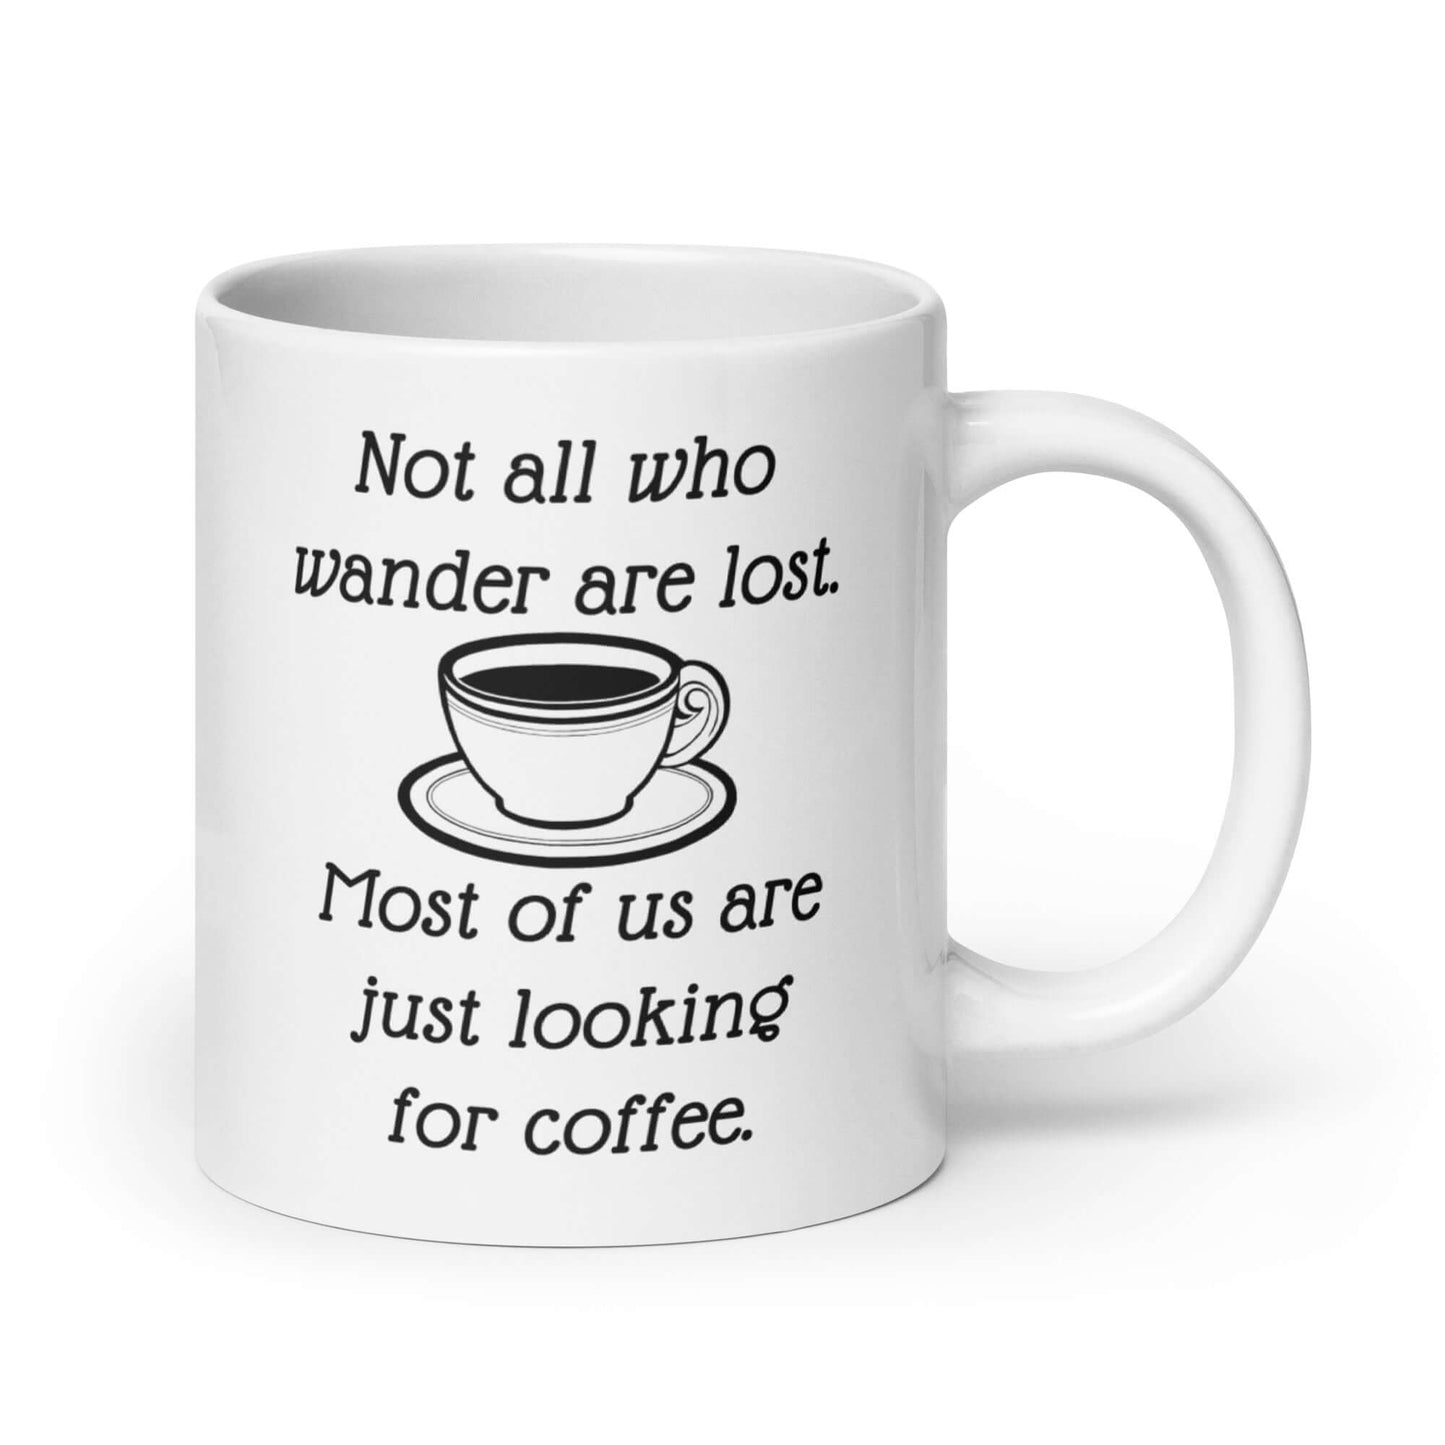 Funny all who wander coffee humor mug